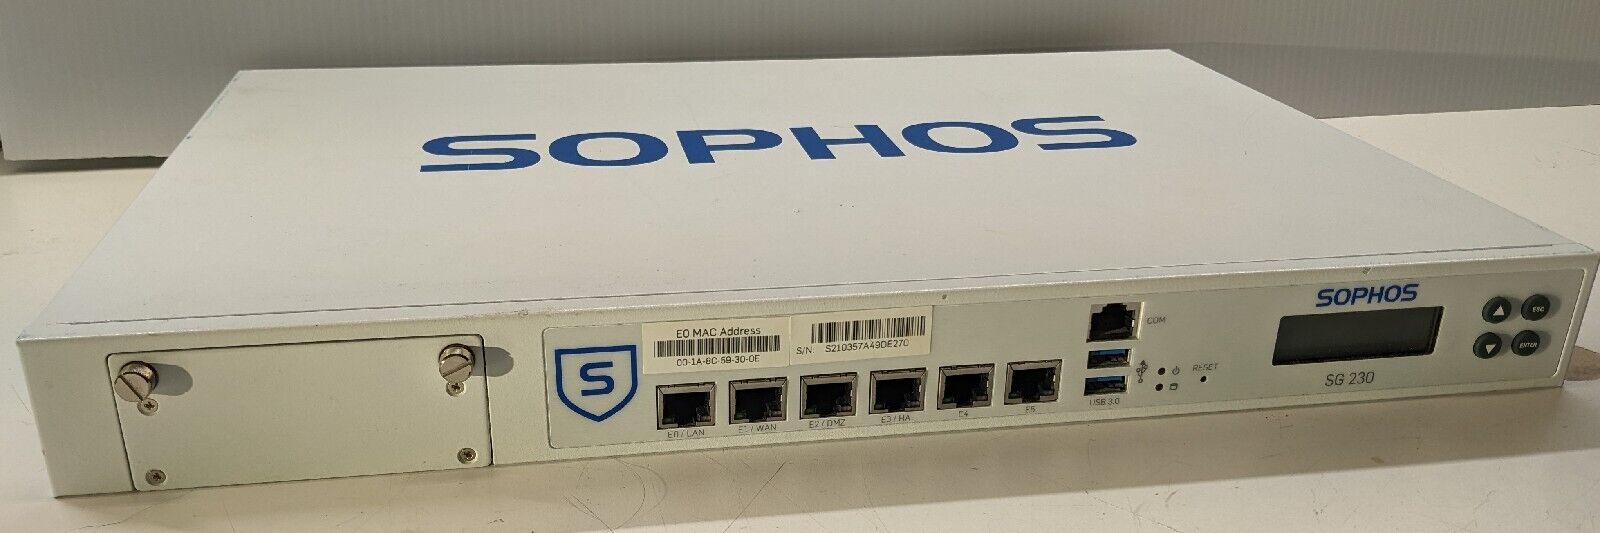 Sophos SG 230 Rev.1 Network Firewall. Rack mount pfsense opnsense